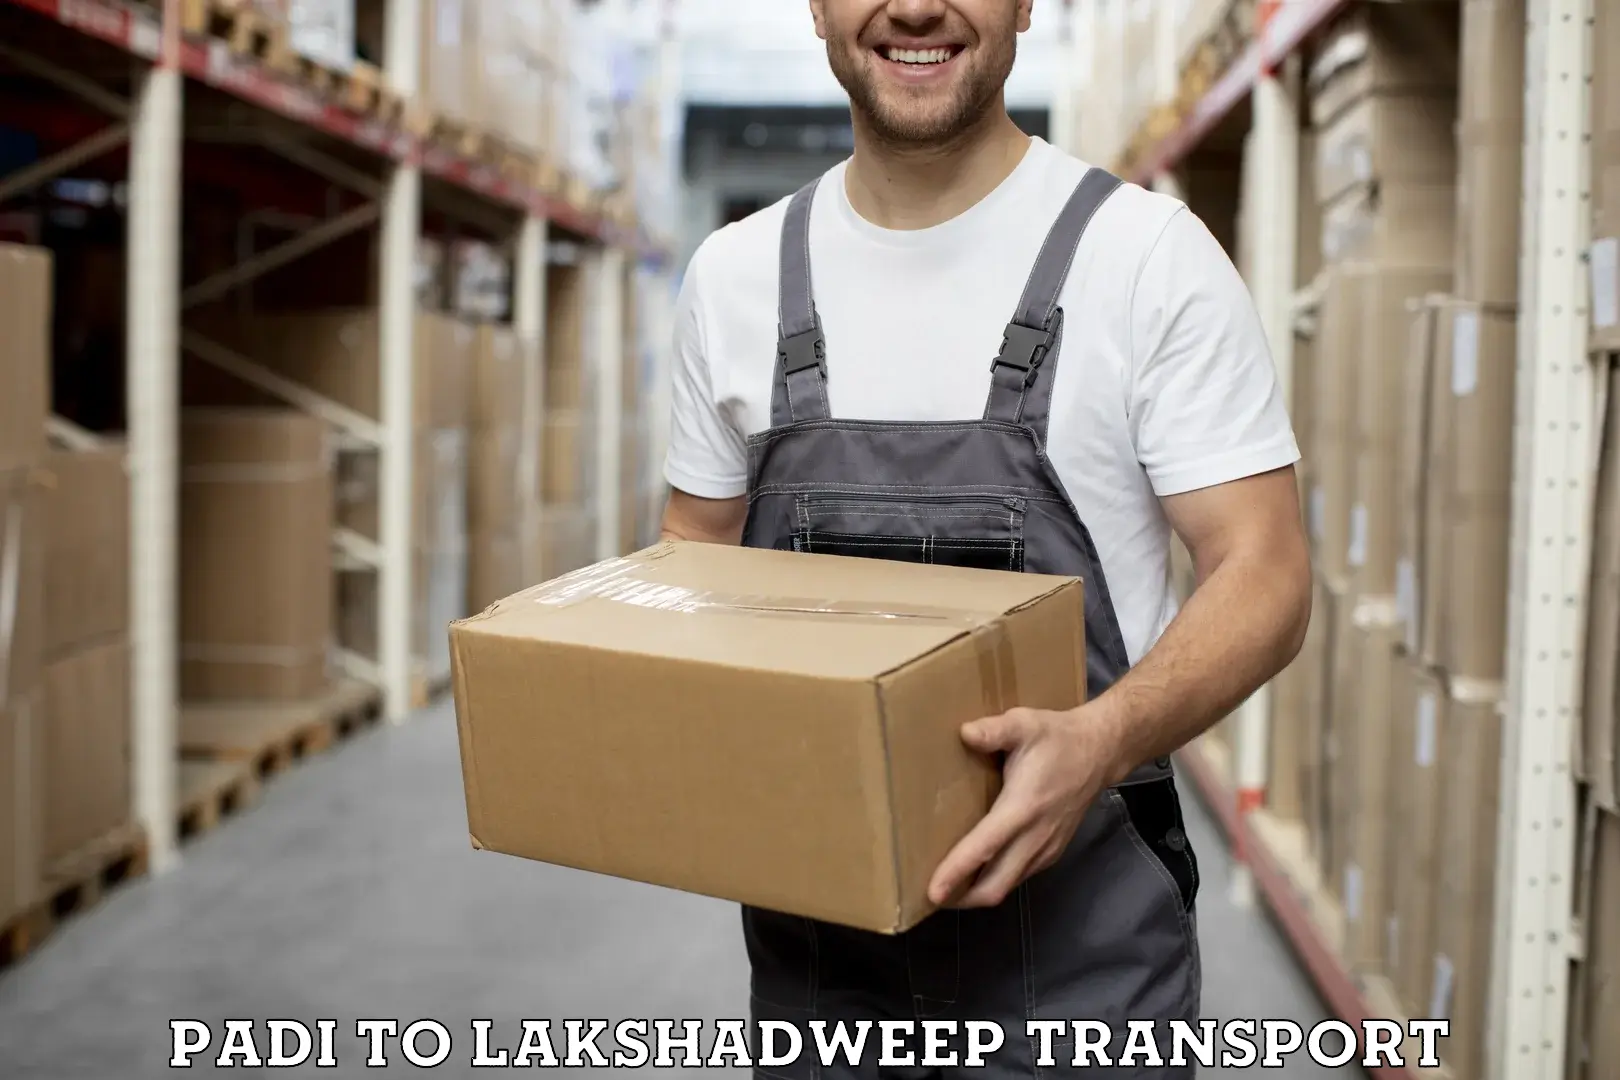 Lorry transport service Padi to Lakshadweep